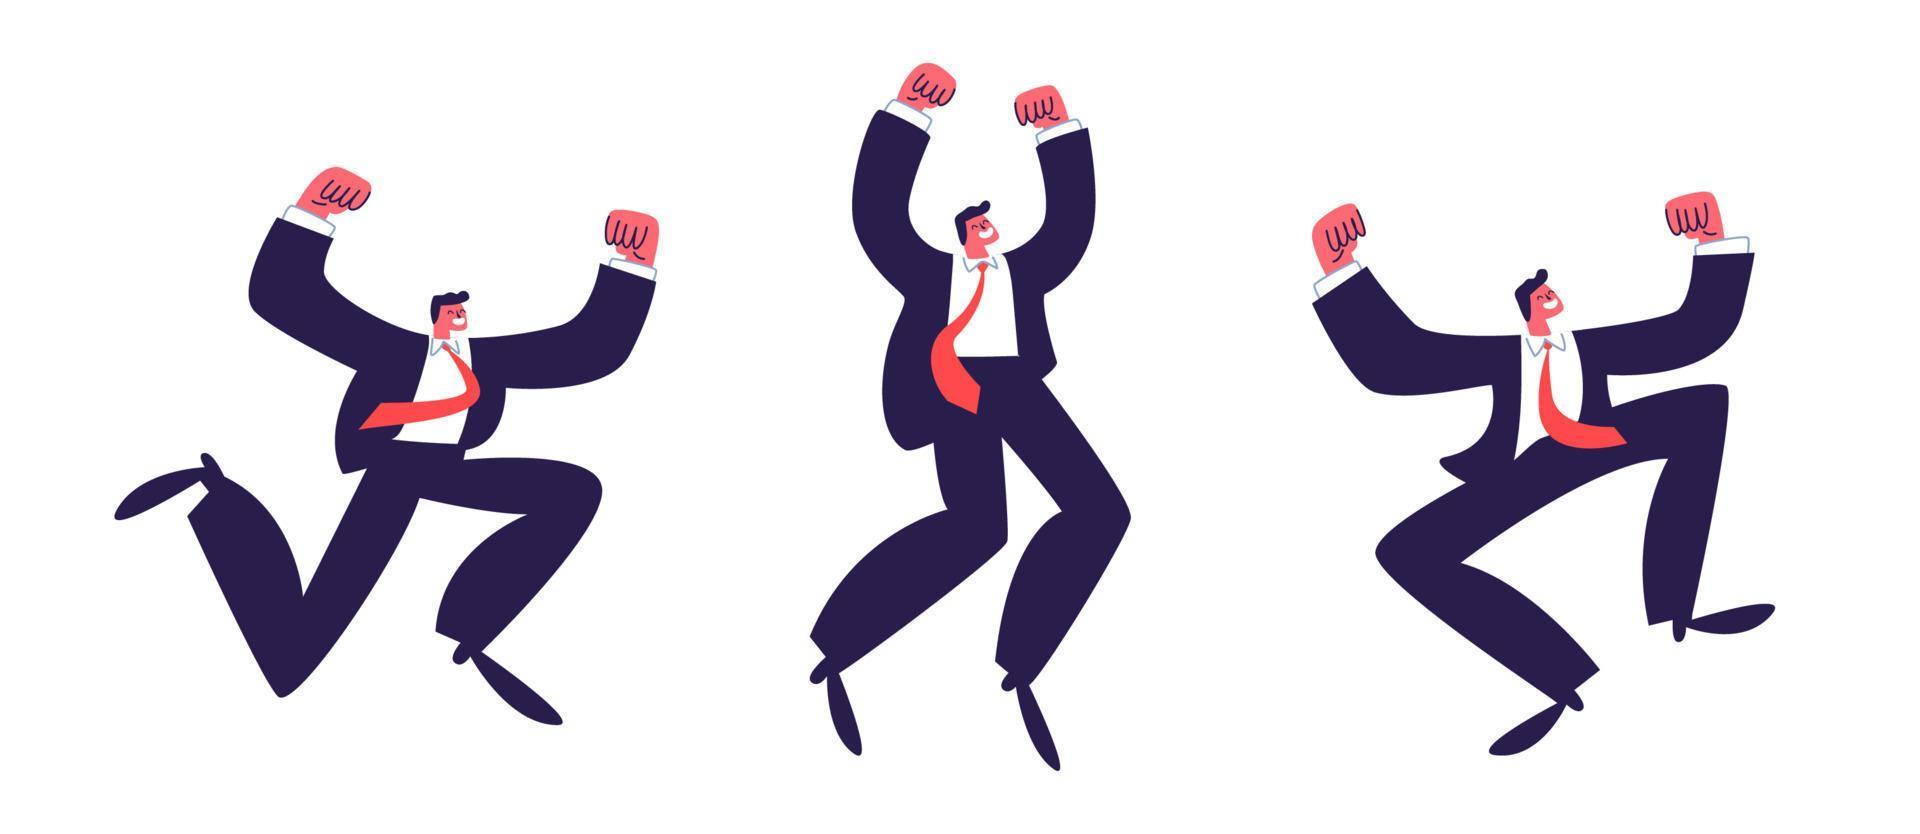 saltando hombres. un grupo de hombres victoriosos con traje y corbata roja levantaron la mano emocionalmente. ilustración de stock vectorial aislada sobre fondo blanco. vector